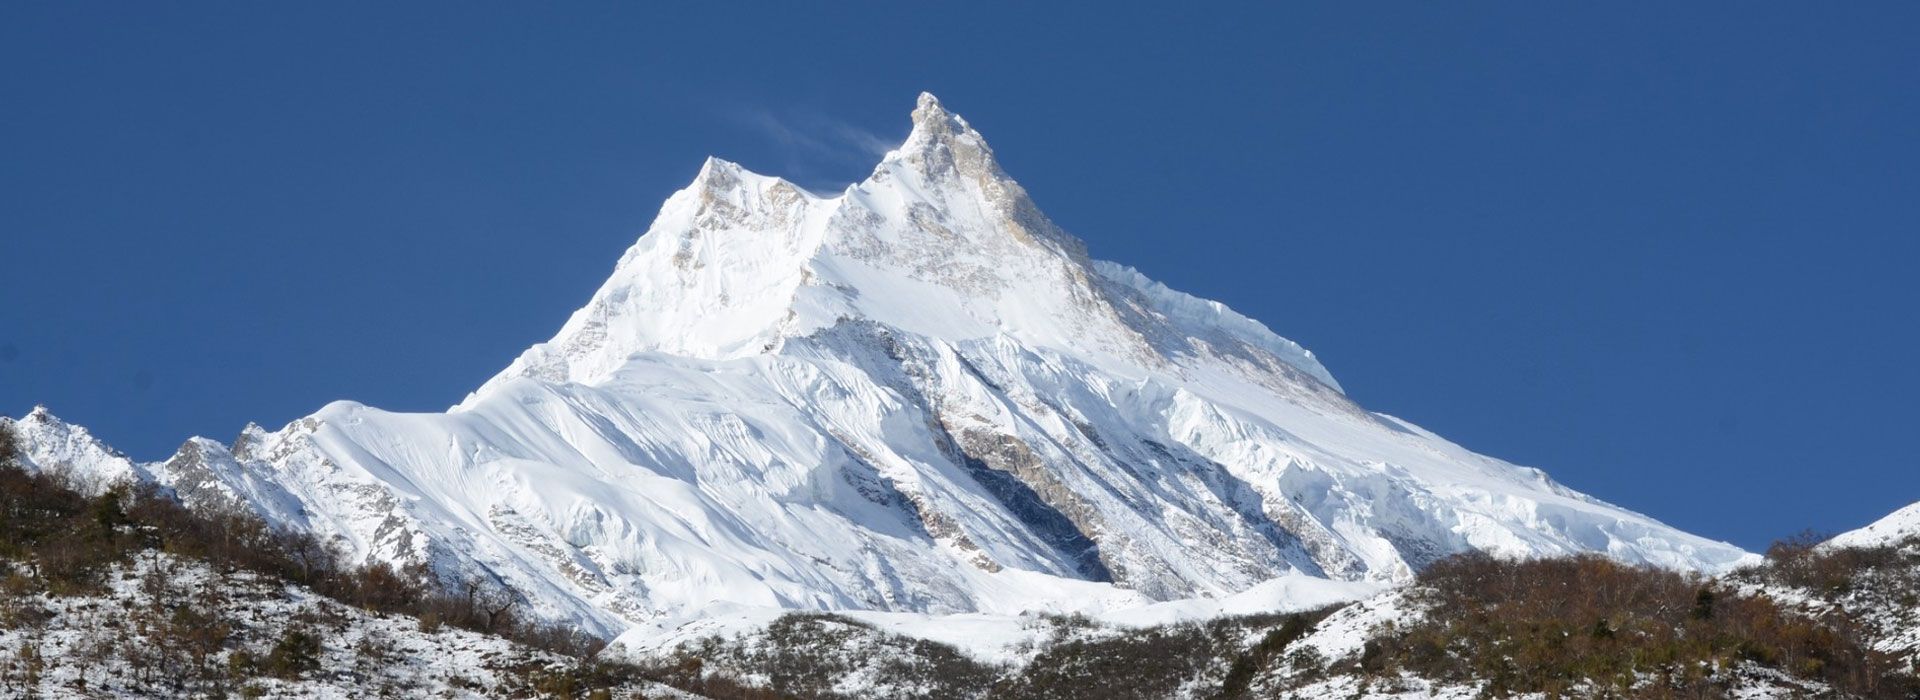 Mount Manaslu, Gorkha